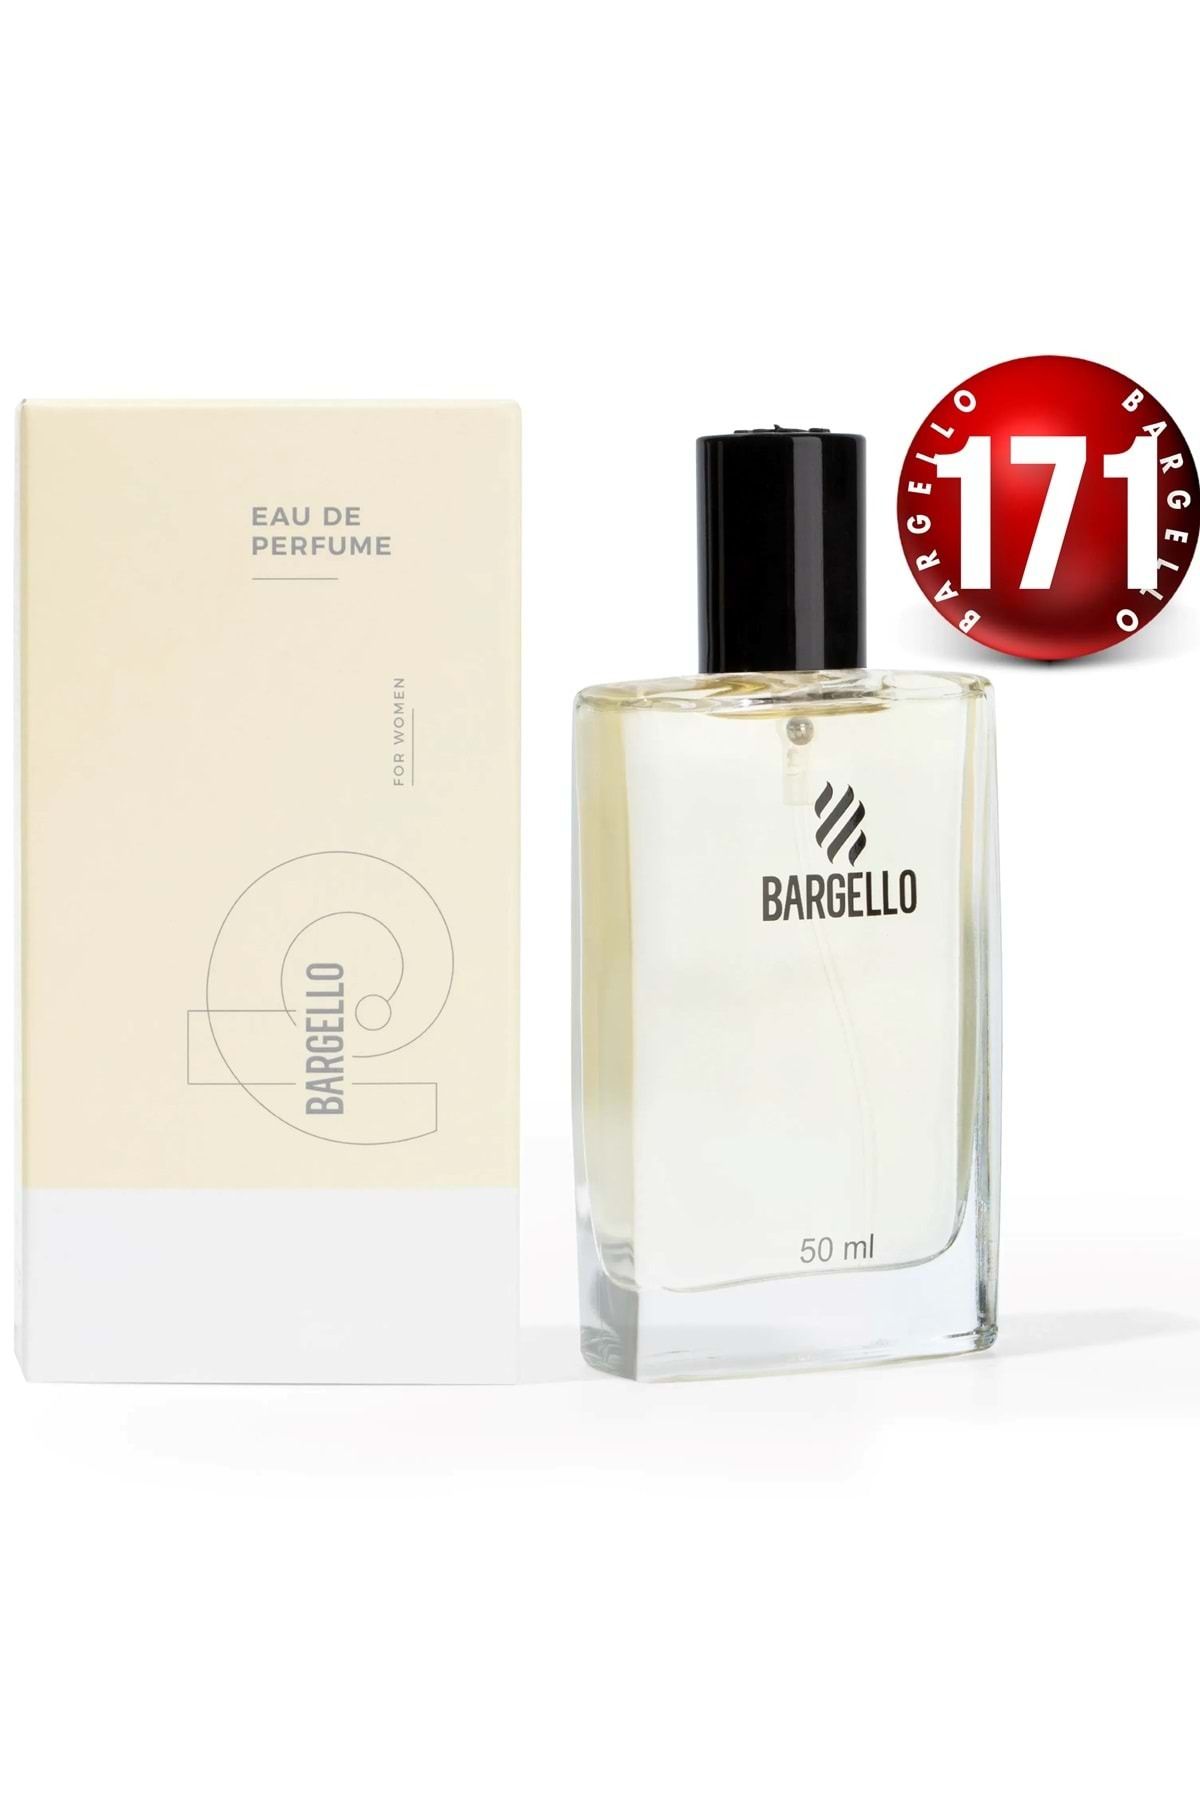 Bargello 171 Kadın 50 ml Parfüm Edp Floral